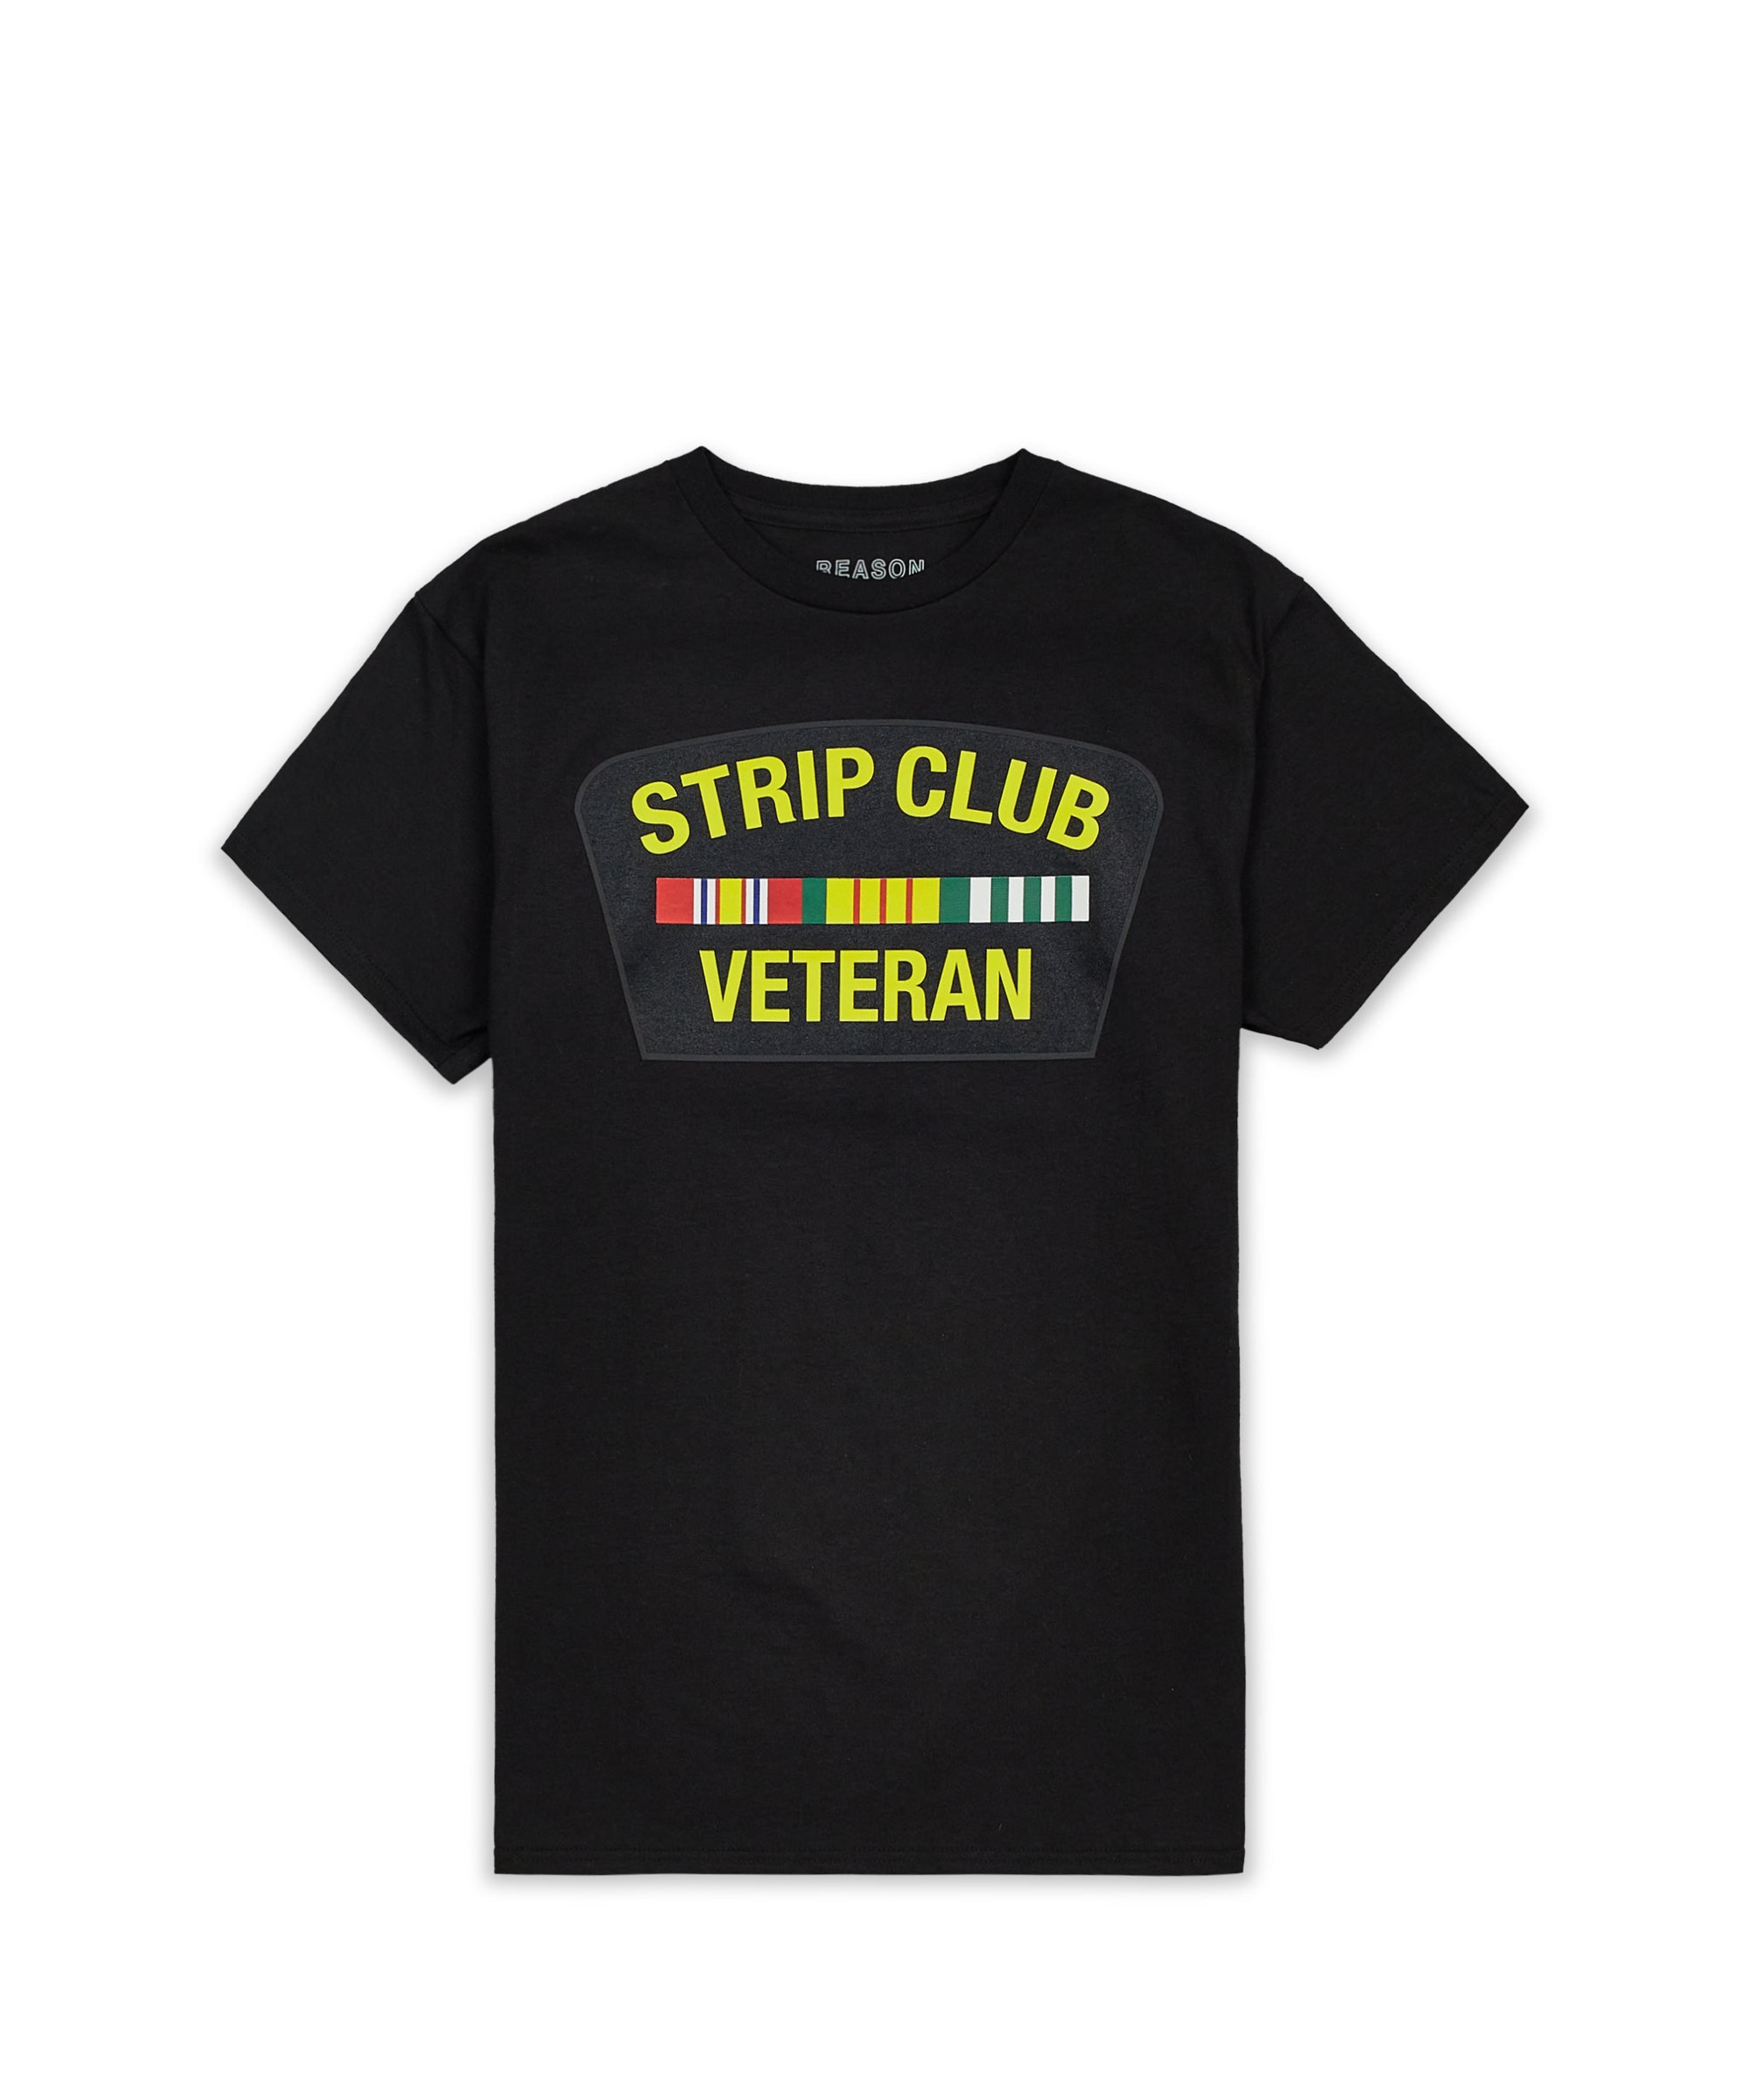 Alternate View 3 of Strip Club Veteran Short Sleeve Tee - Black